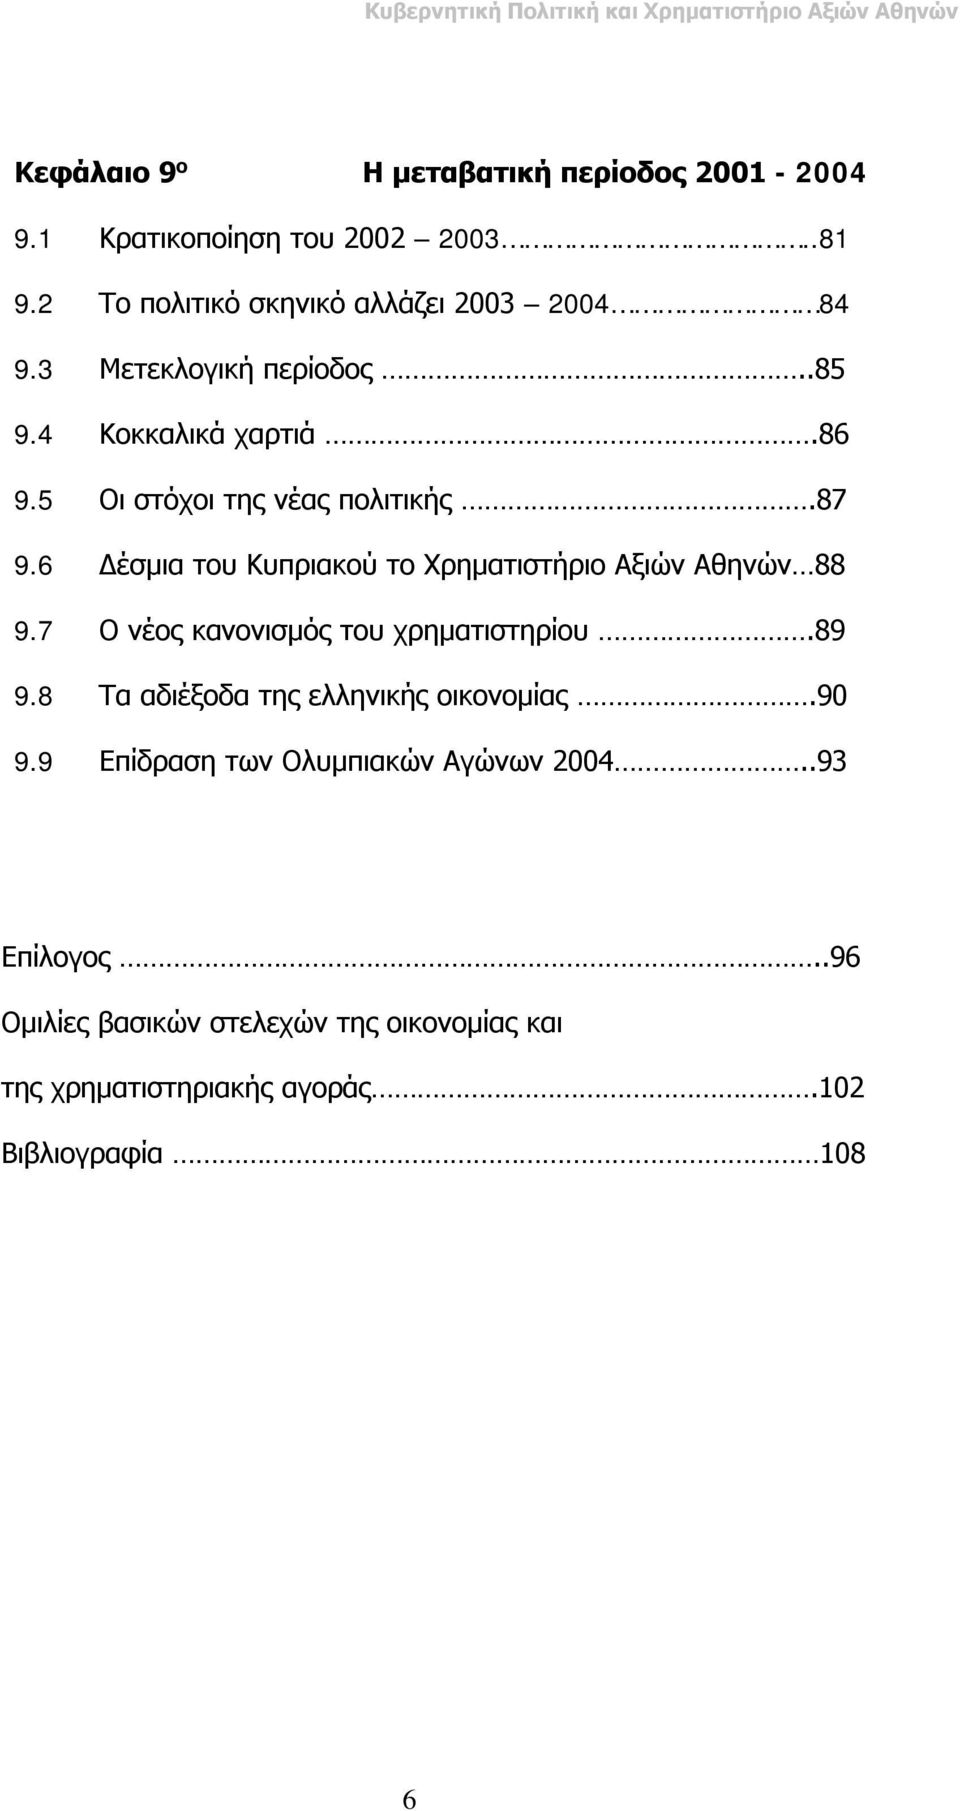 6 Δέσμια του Κυπριακού το Χρηματιστήριο Αξιών Αθηνών 88 9.7 Ο νέος κανονισμός του χρηματιστηρίου.89 9.